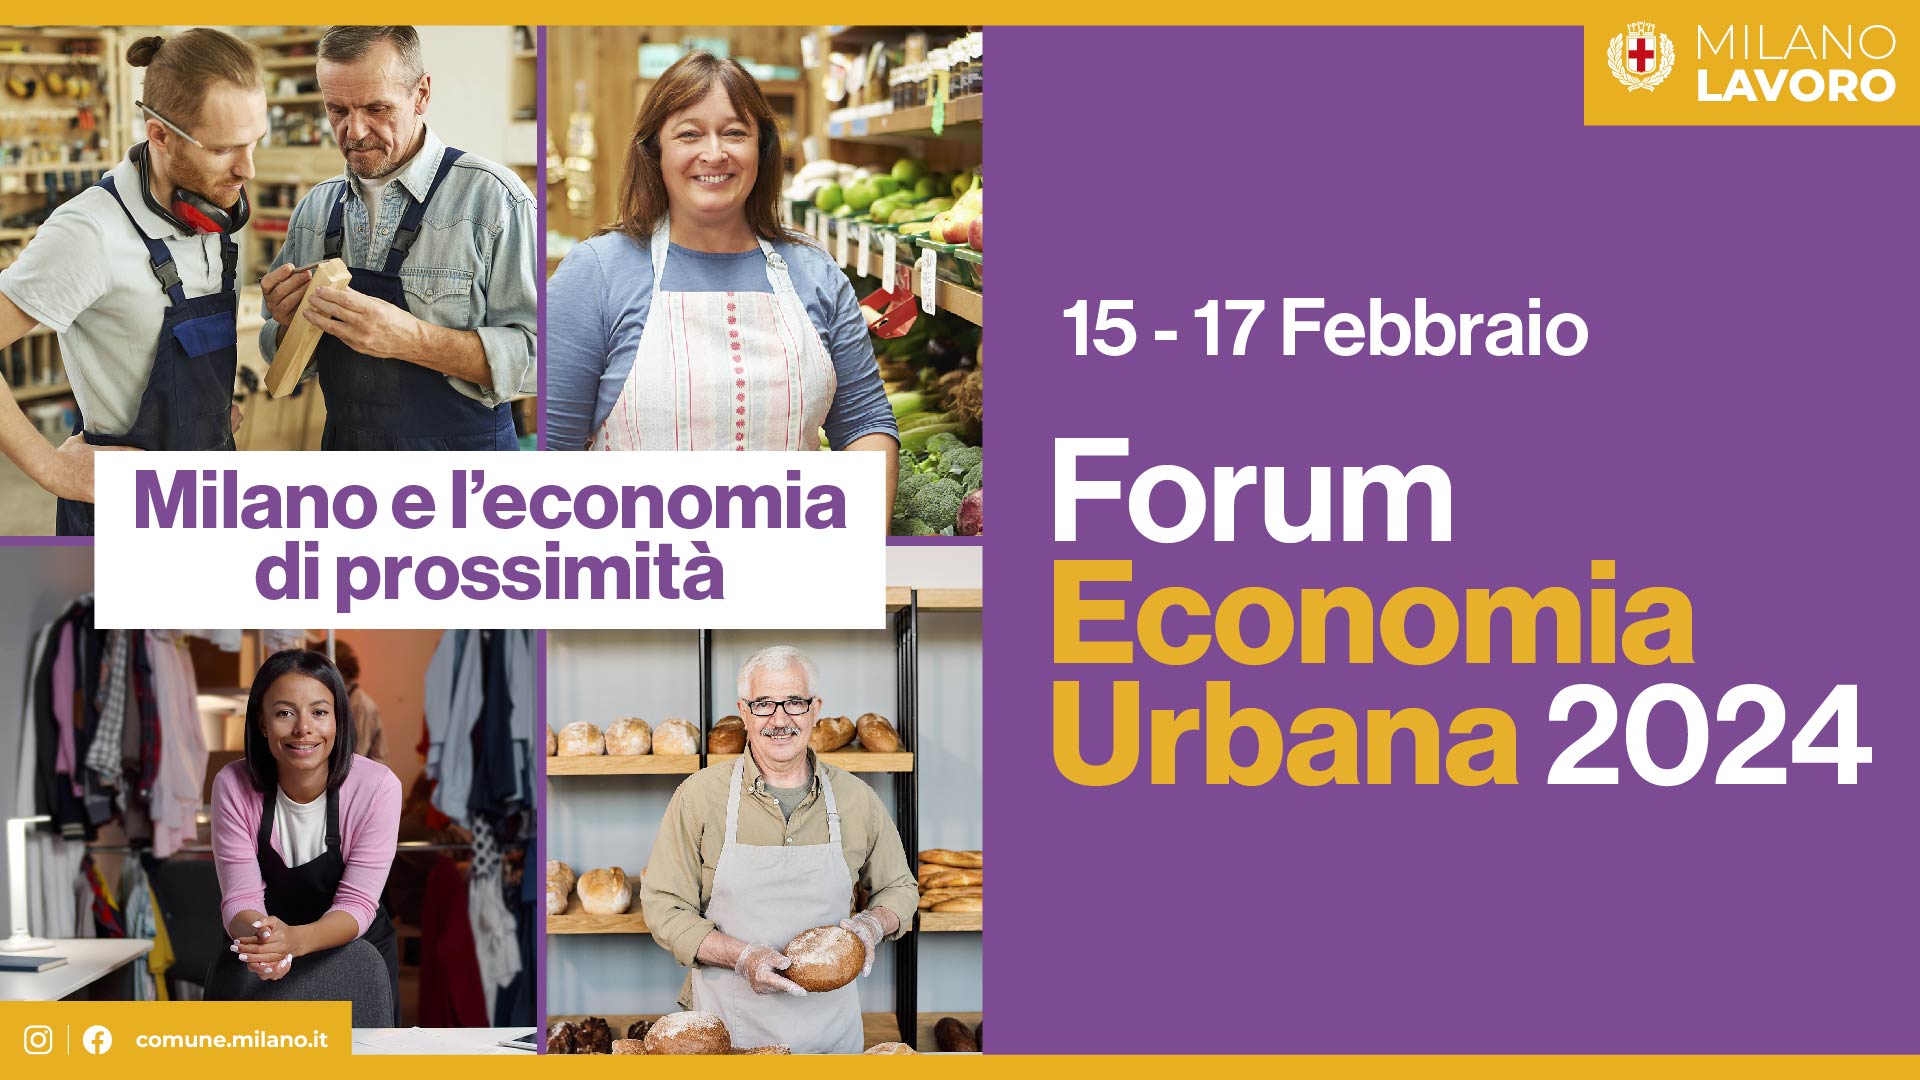 Forum Economia Urbana: economia di prossimità